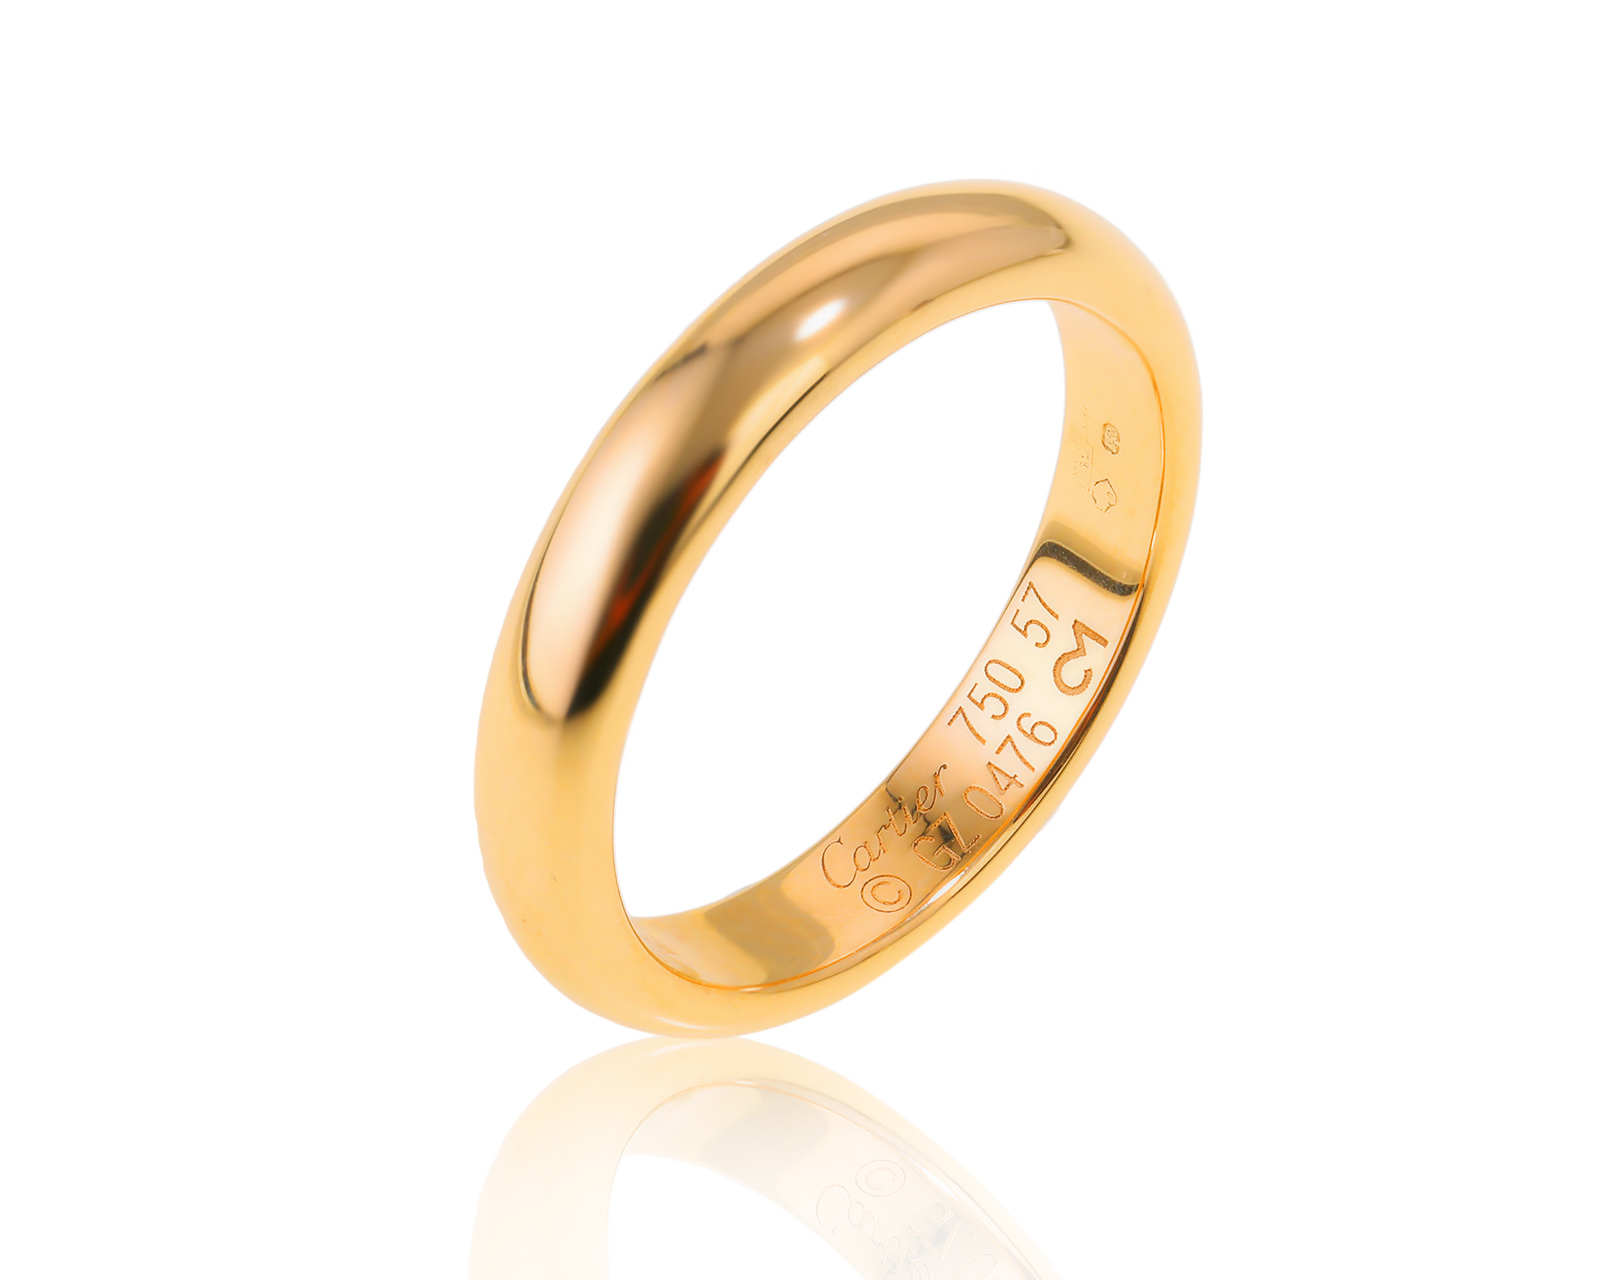 Оригинальное золотое кольцо Cartier 1895